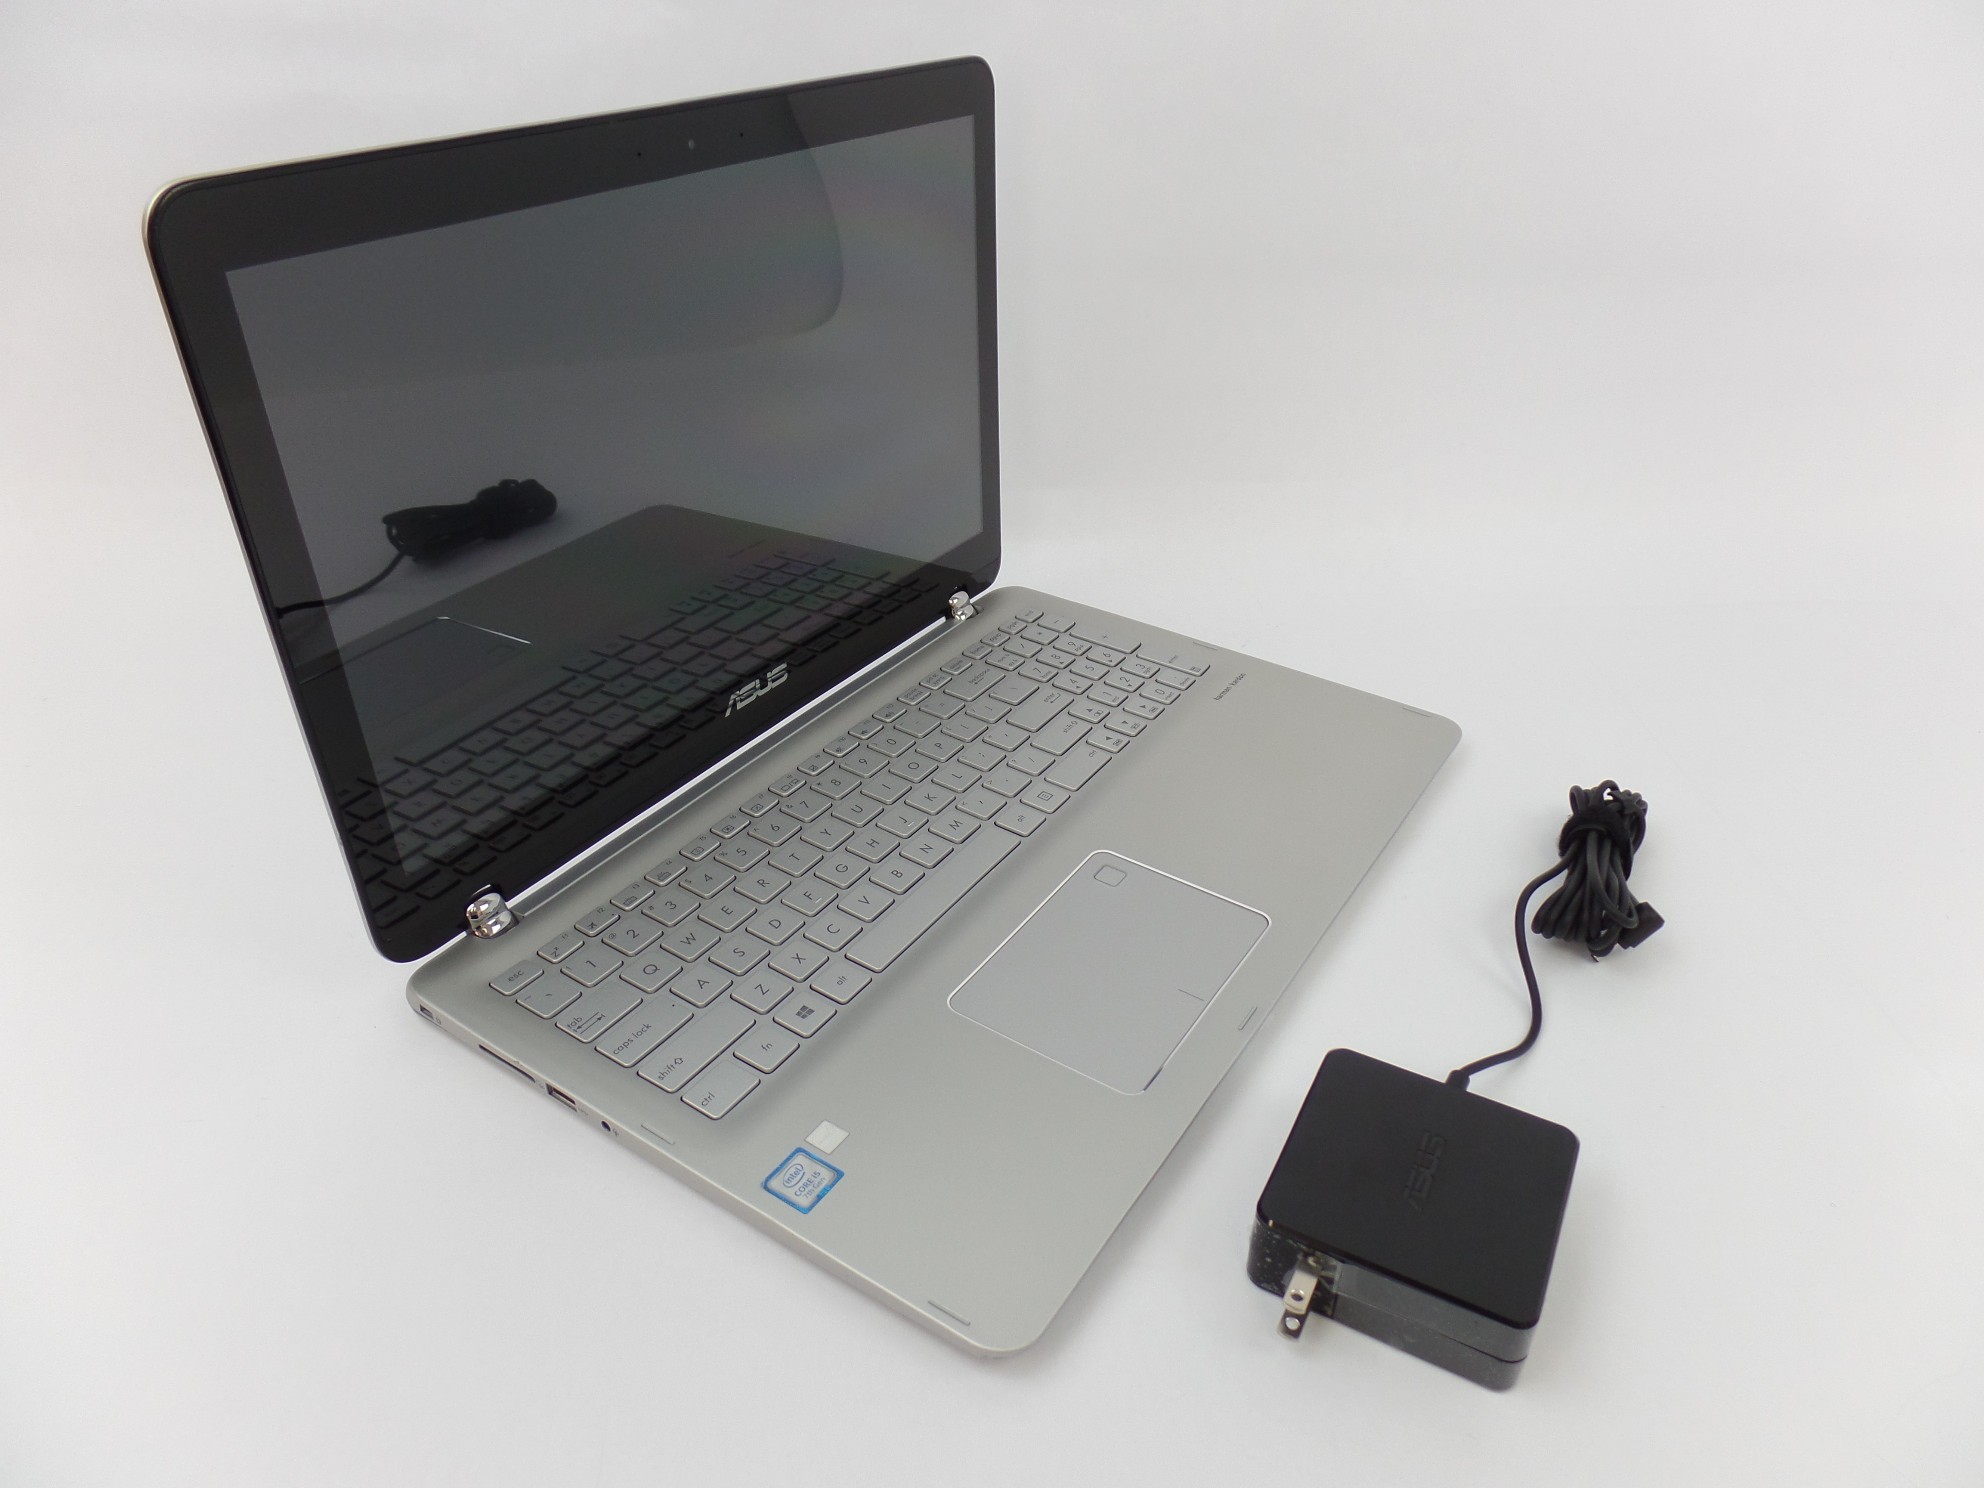 ASUS Q504UA 15.6" FHD Touch i5-7200U 2.5GHz 12GB 1TB W10H 2in1 Laptop U1